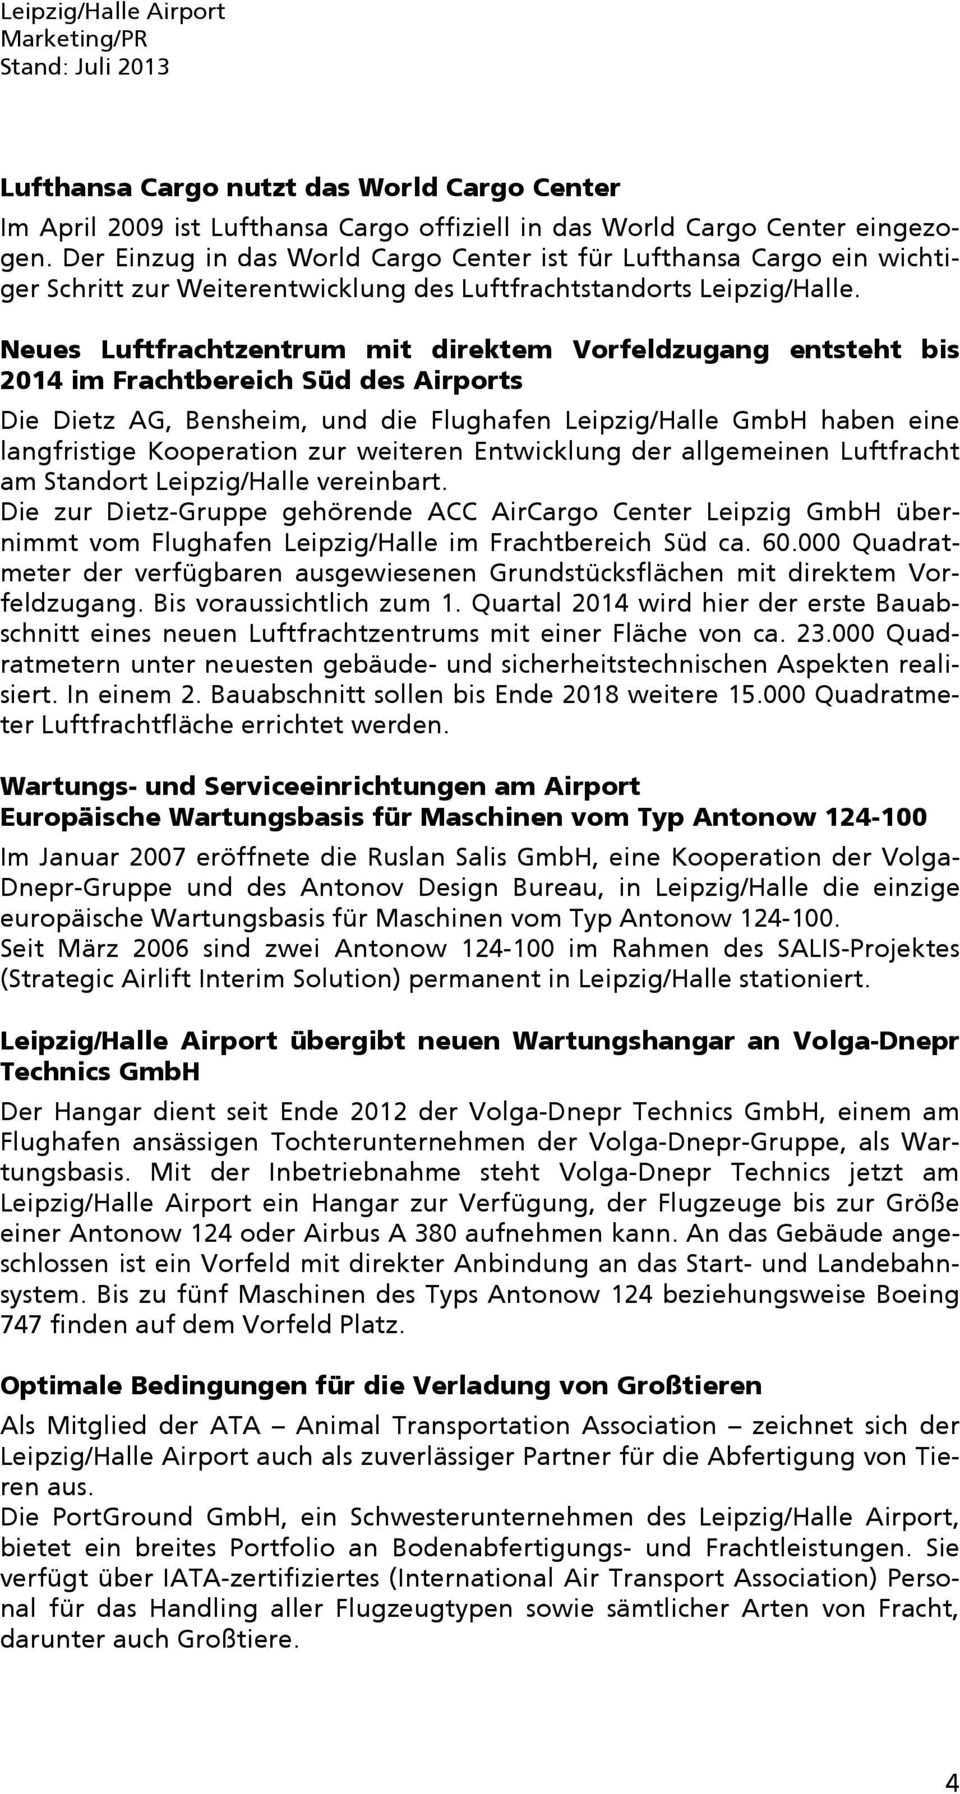 Neues Luftfrachtzentrum mit direktem Vorfeldzugang entsteht bis 2014 im Frachtbereich Süd des Airports Die Dietz AG, Bensheim, und die Flughafen Leipzig/Halle GmbH haben eine langfristige Kooperation